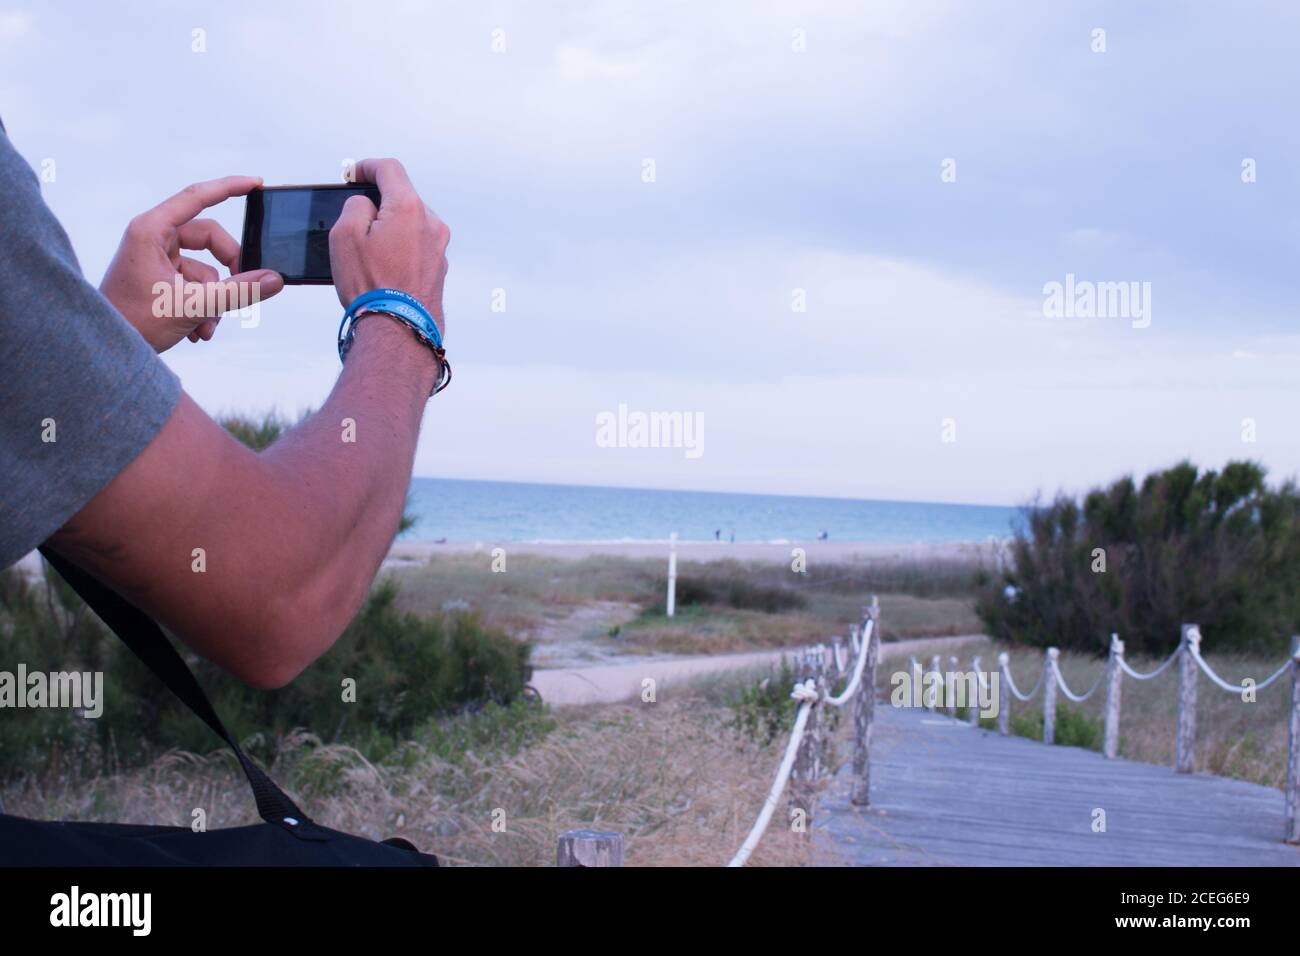 vista de los brazos de un chico fotografiando con su móvil el precioso paisaje de la playa del saler en valencia Stock Photo